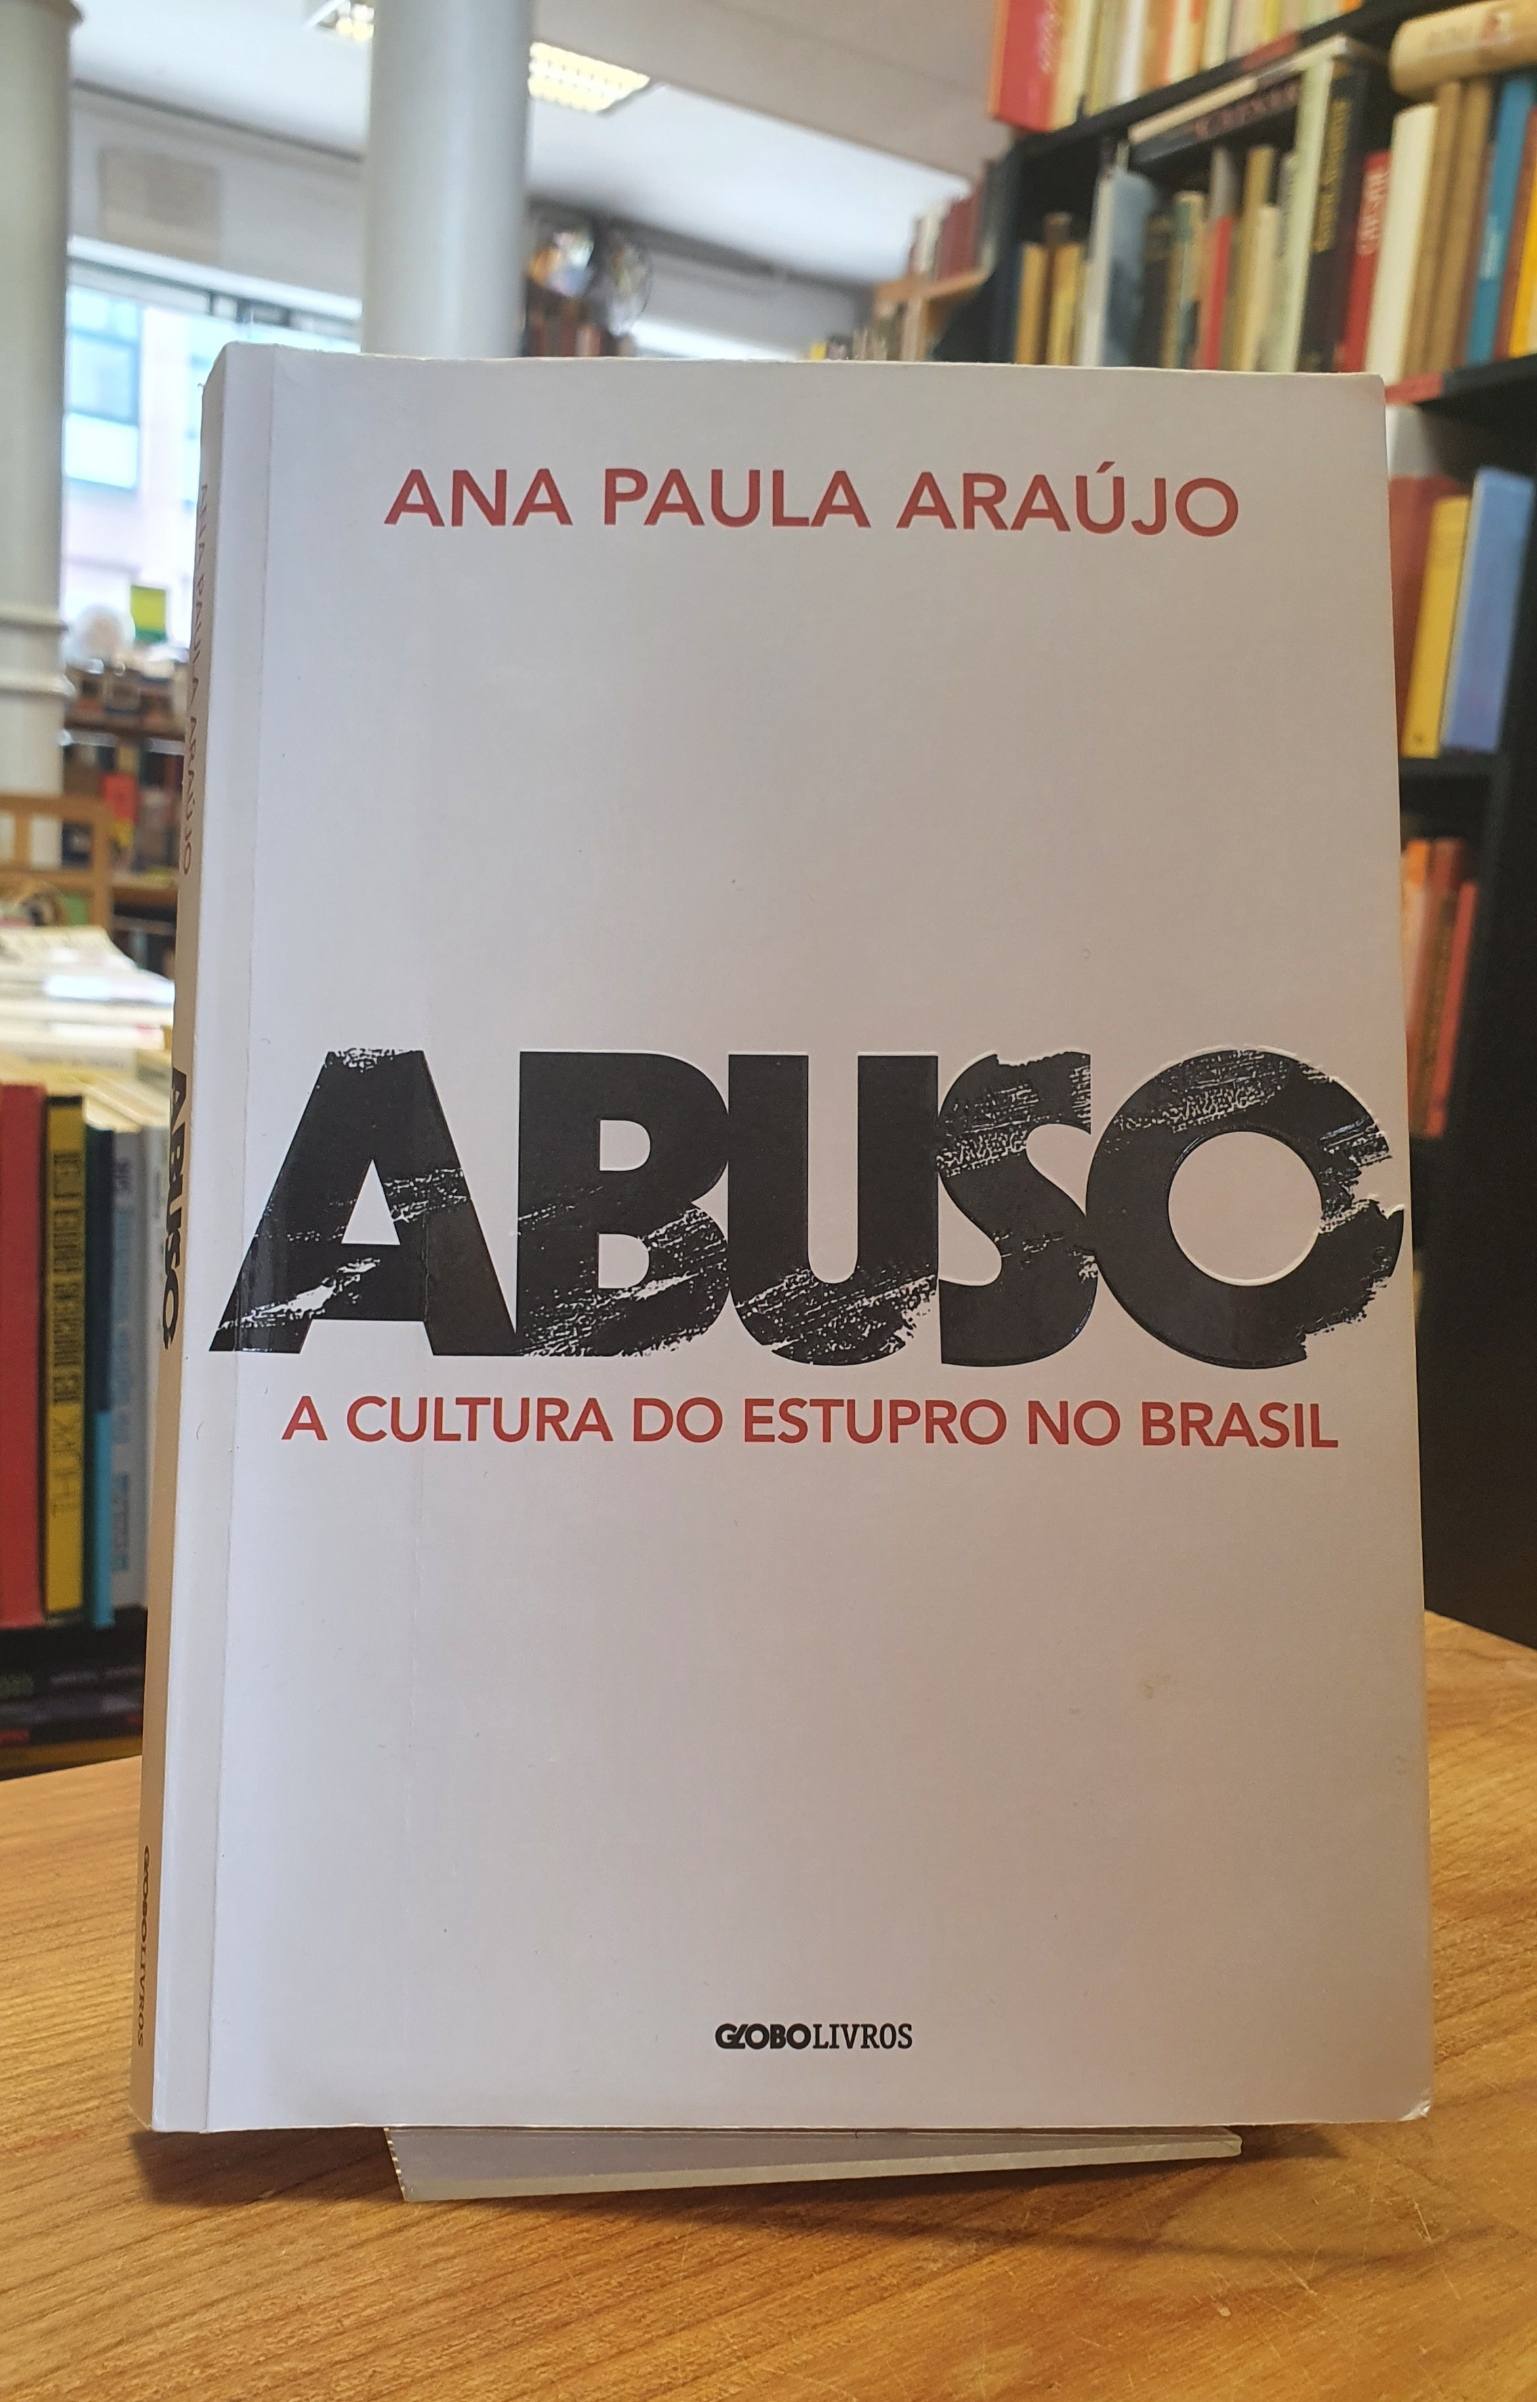 Araújo, Abuso – A cultura do estupro no Brasil,